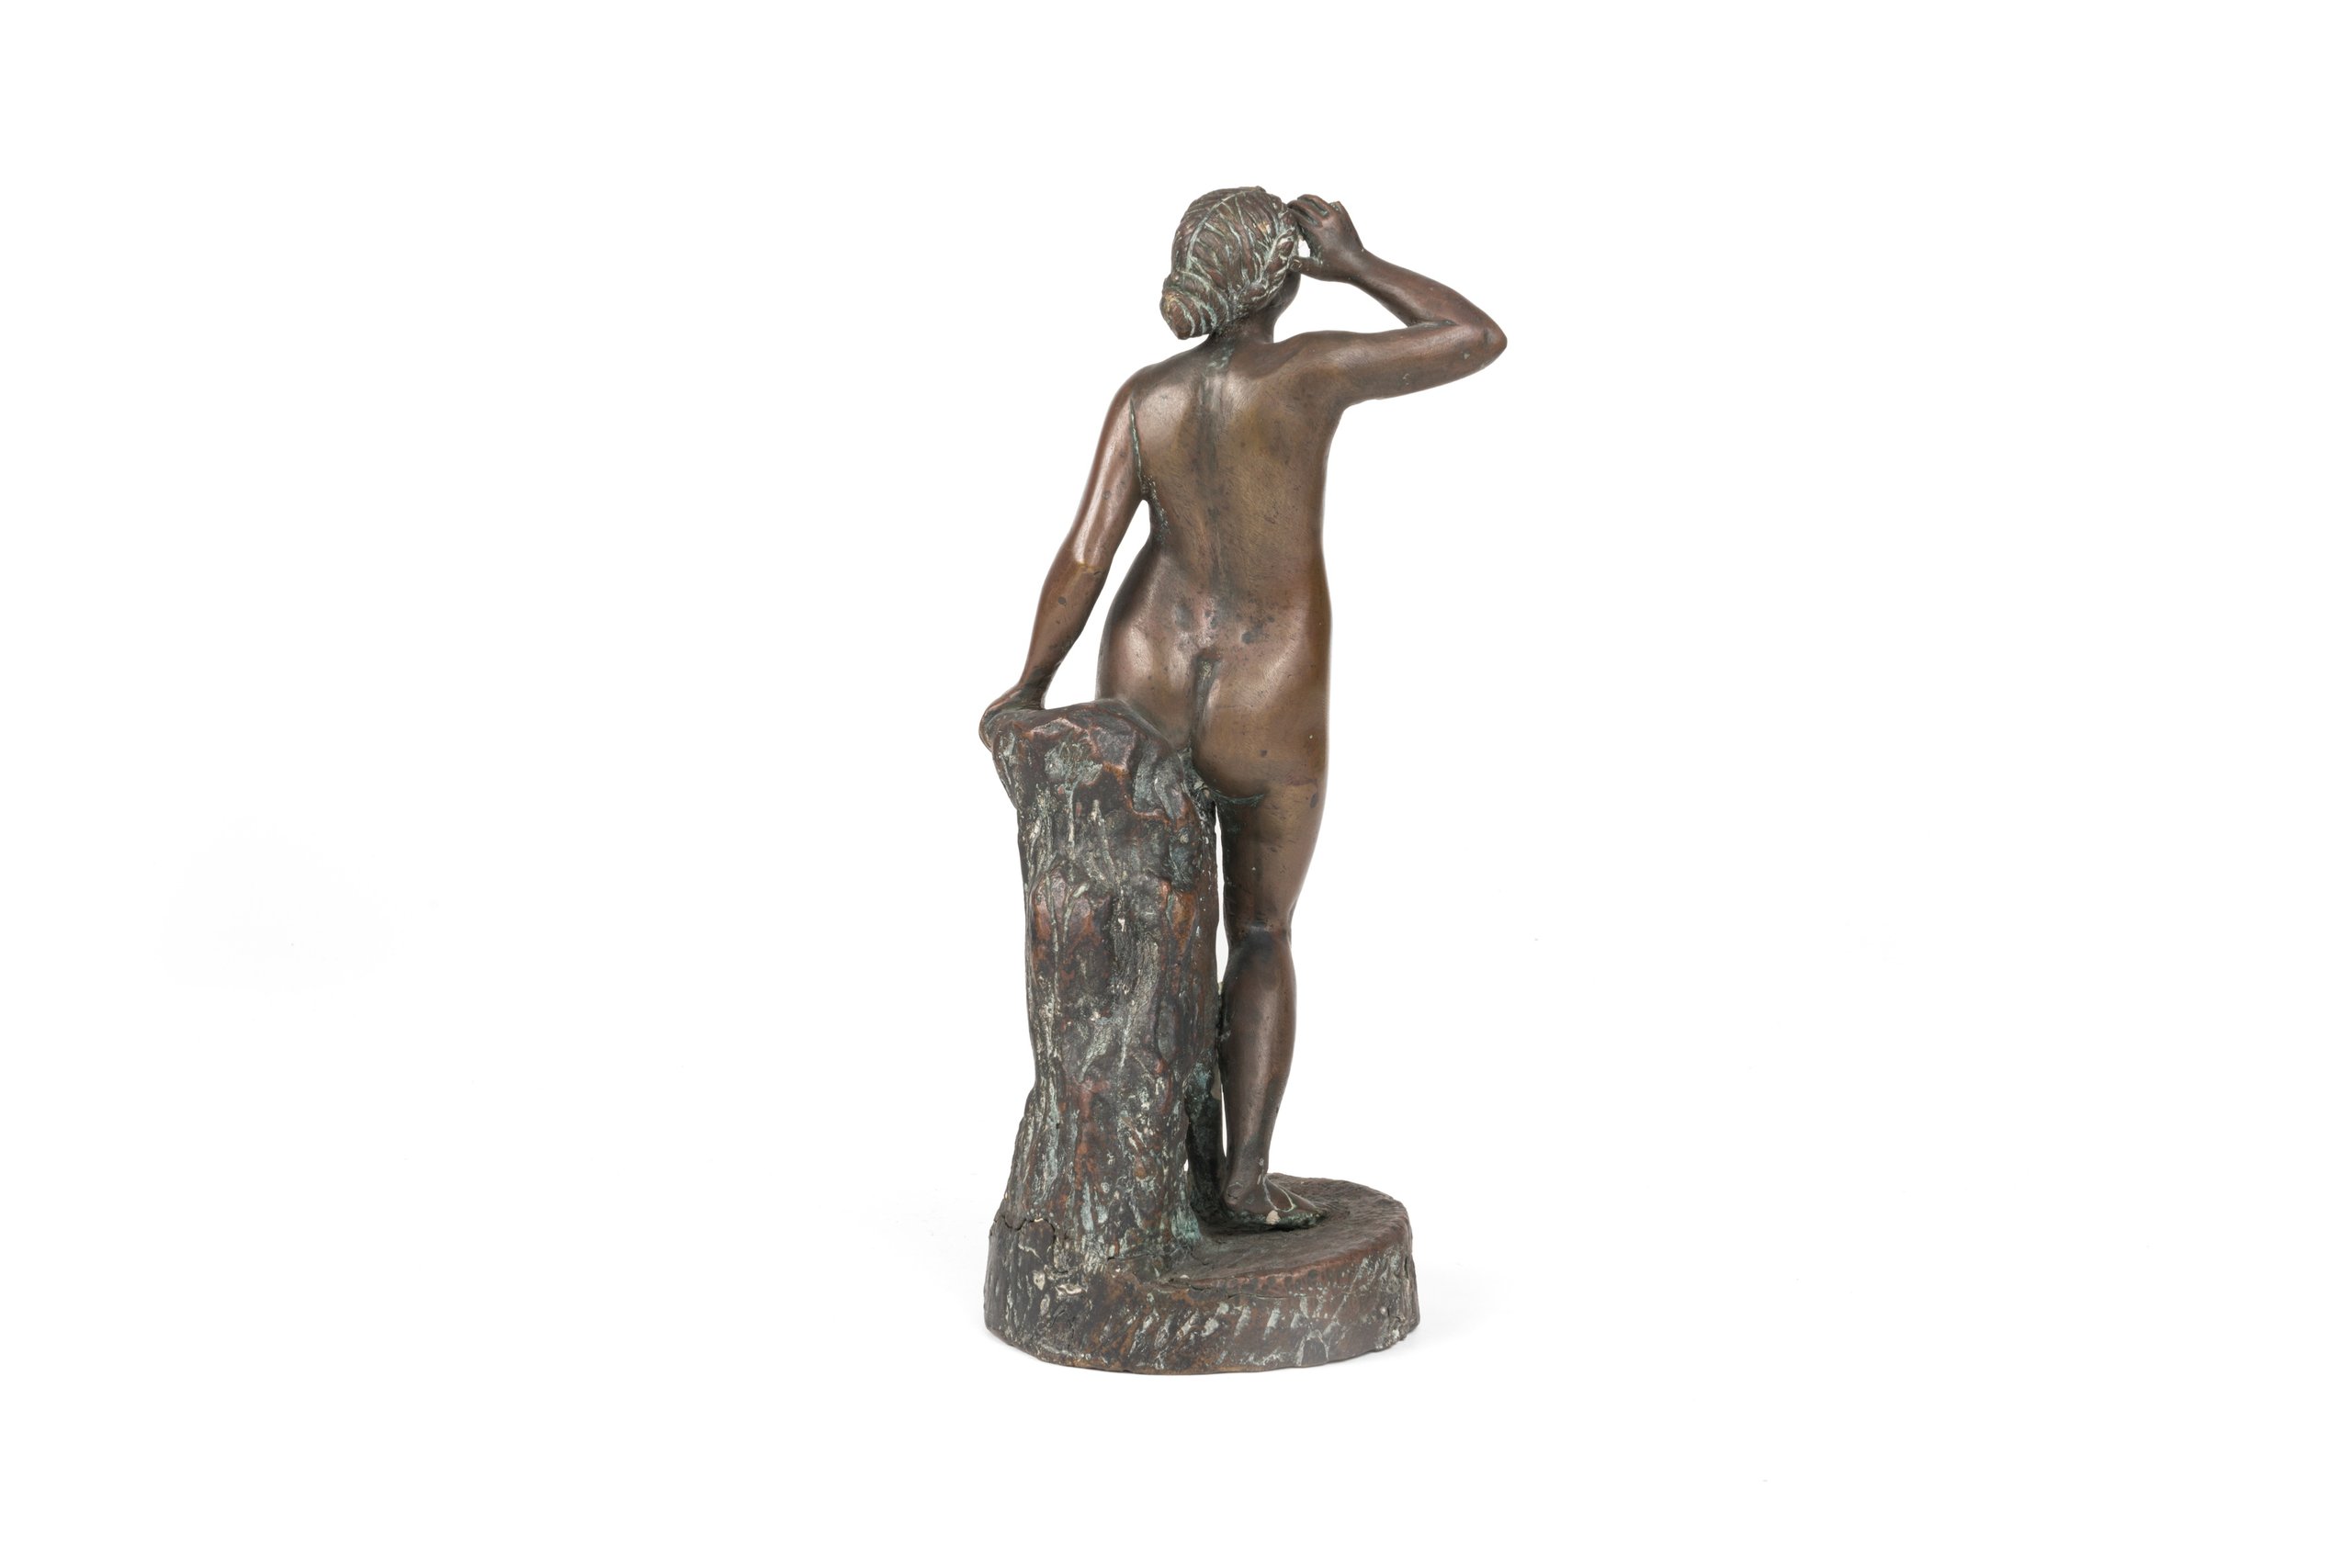 Bronze statuette made late 19th century